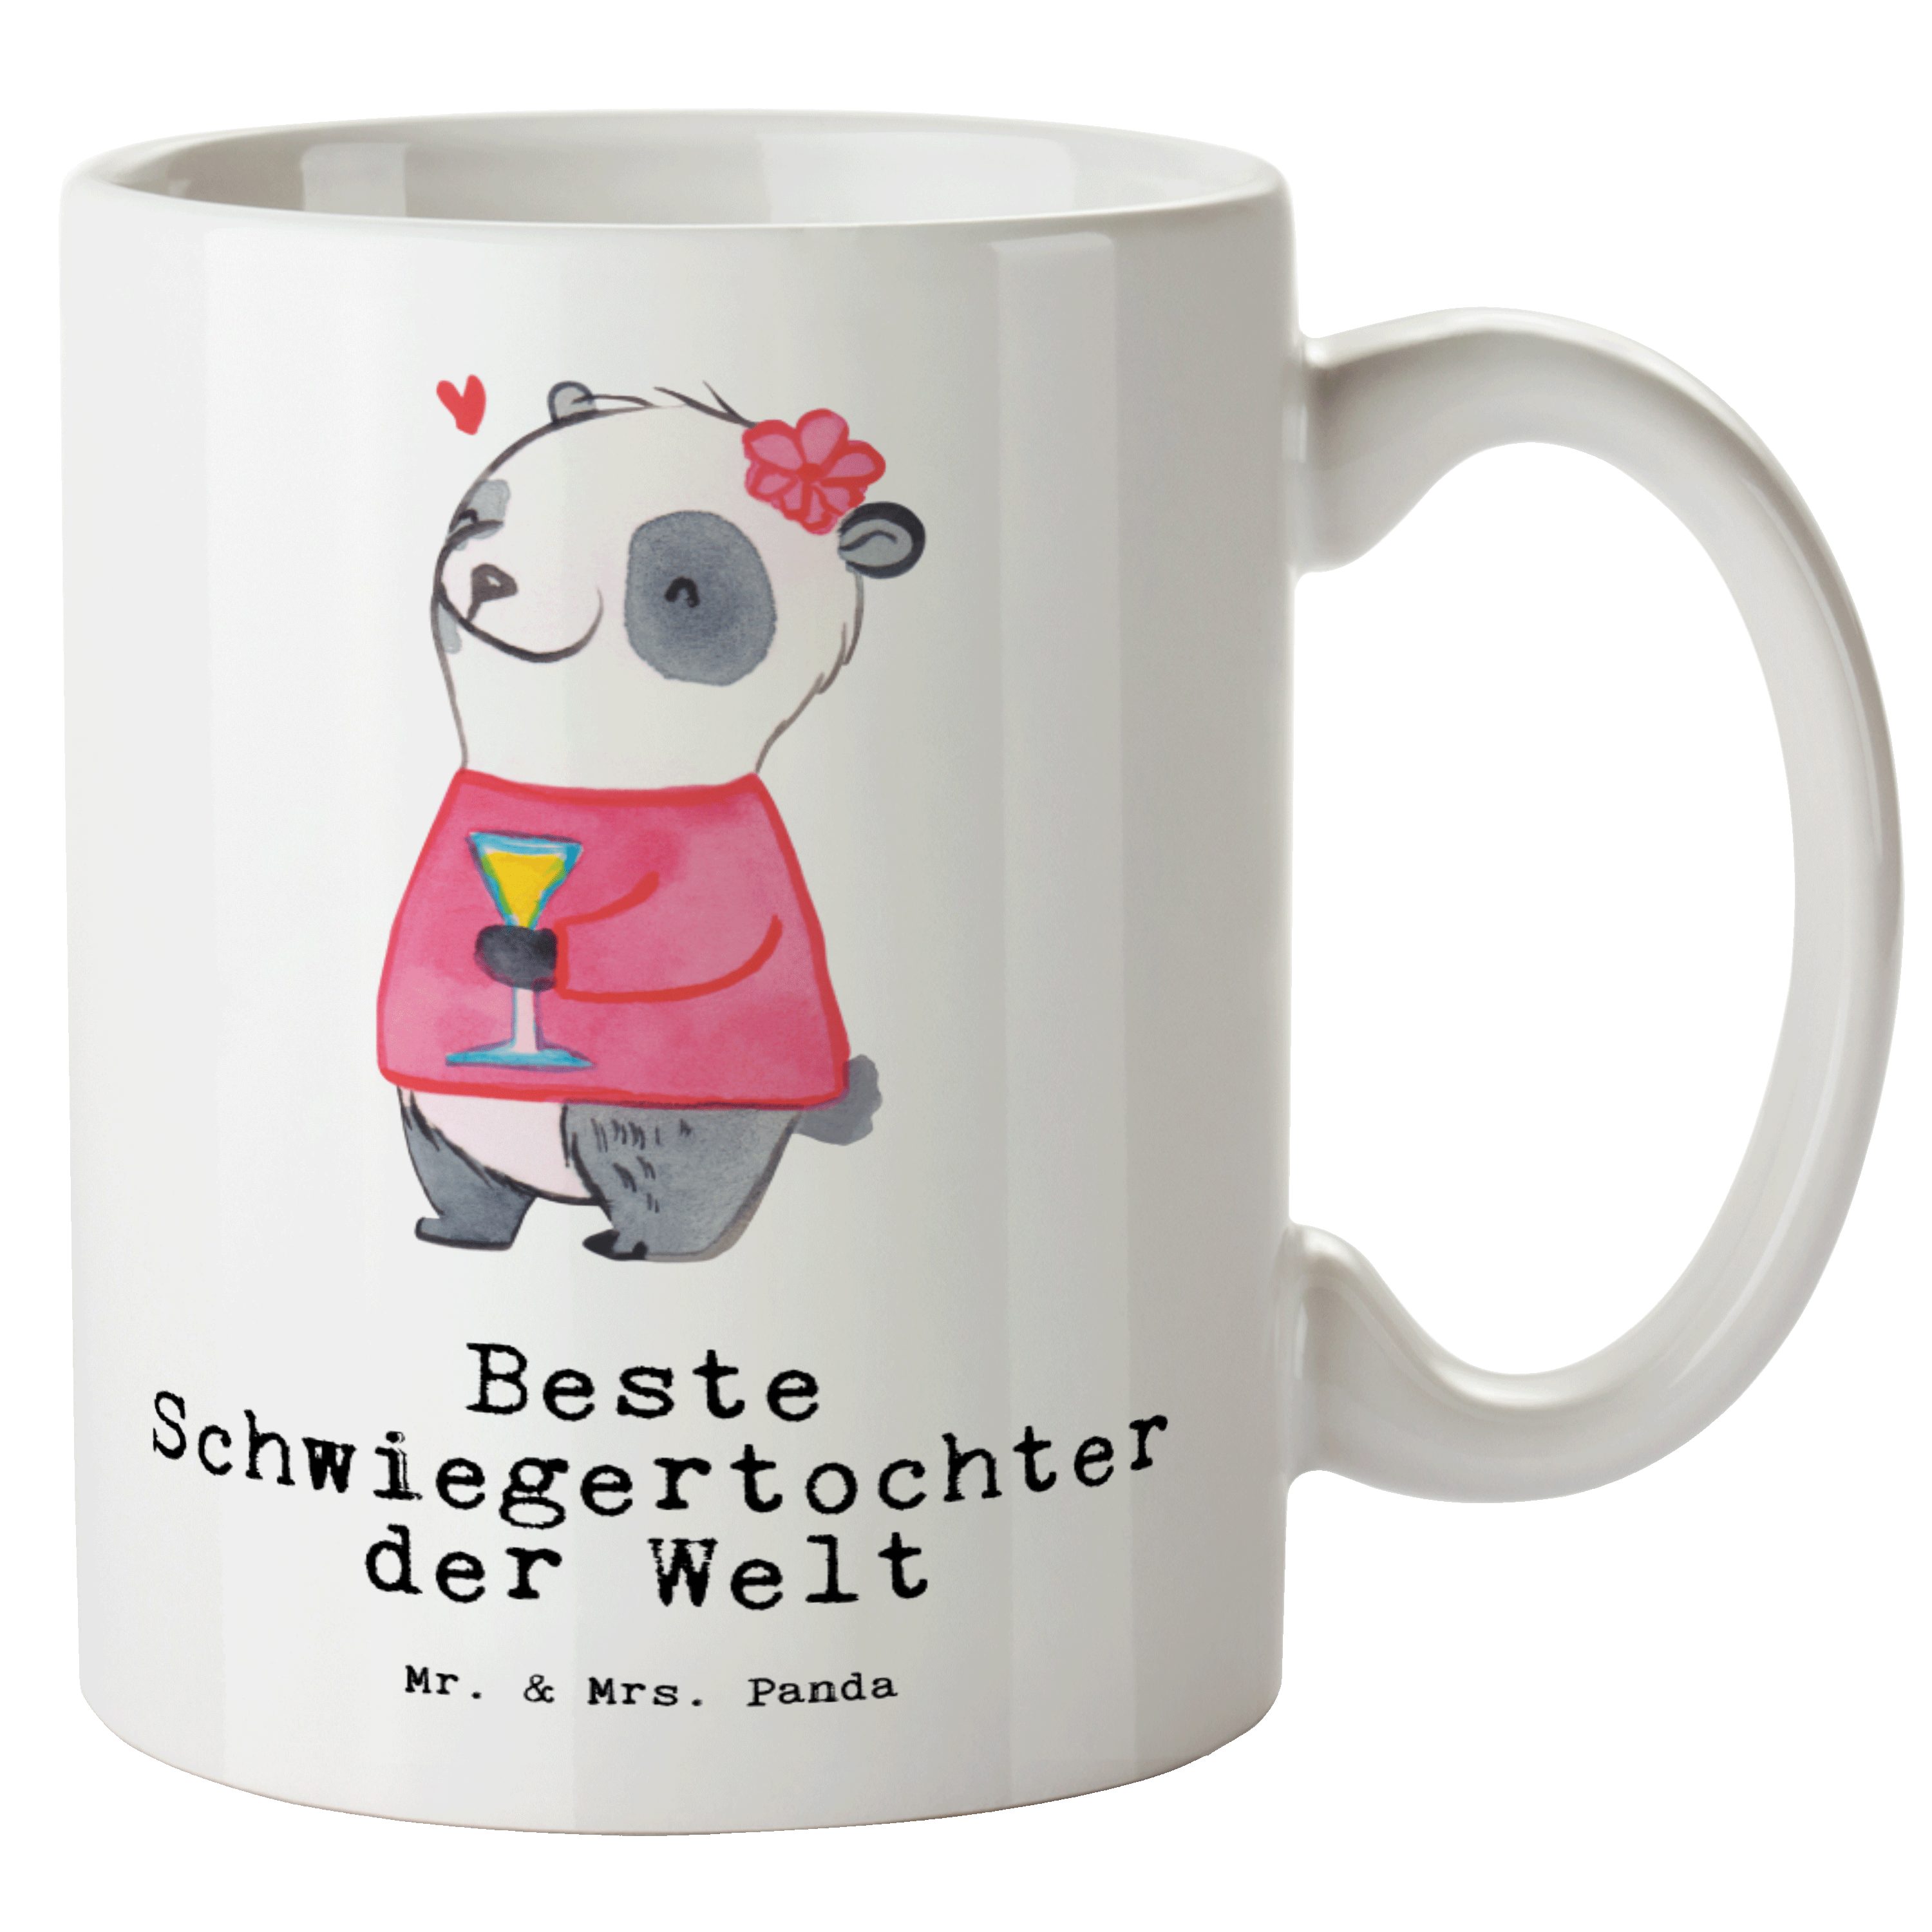 der - Panda Welt Dankeschön, Panda Mrs. Weiß Beste - Mr. Schwiegertochter Geschenk, Keramik Tasse XL & Tasse